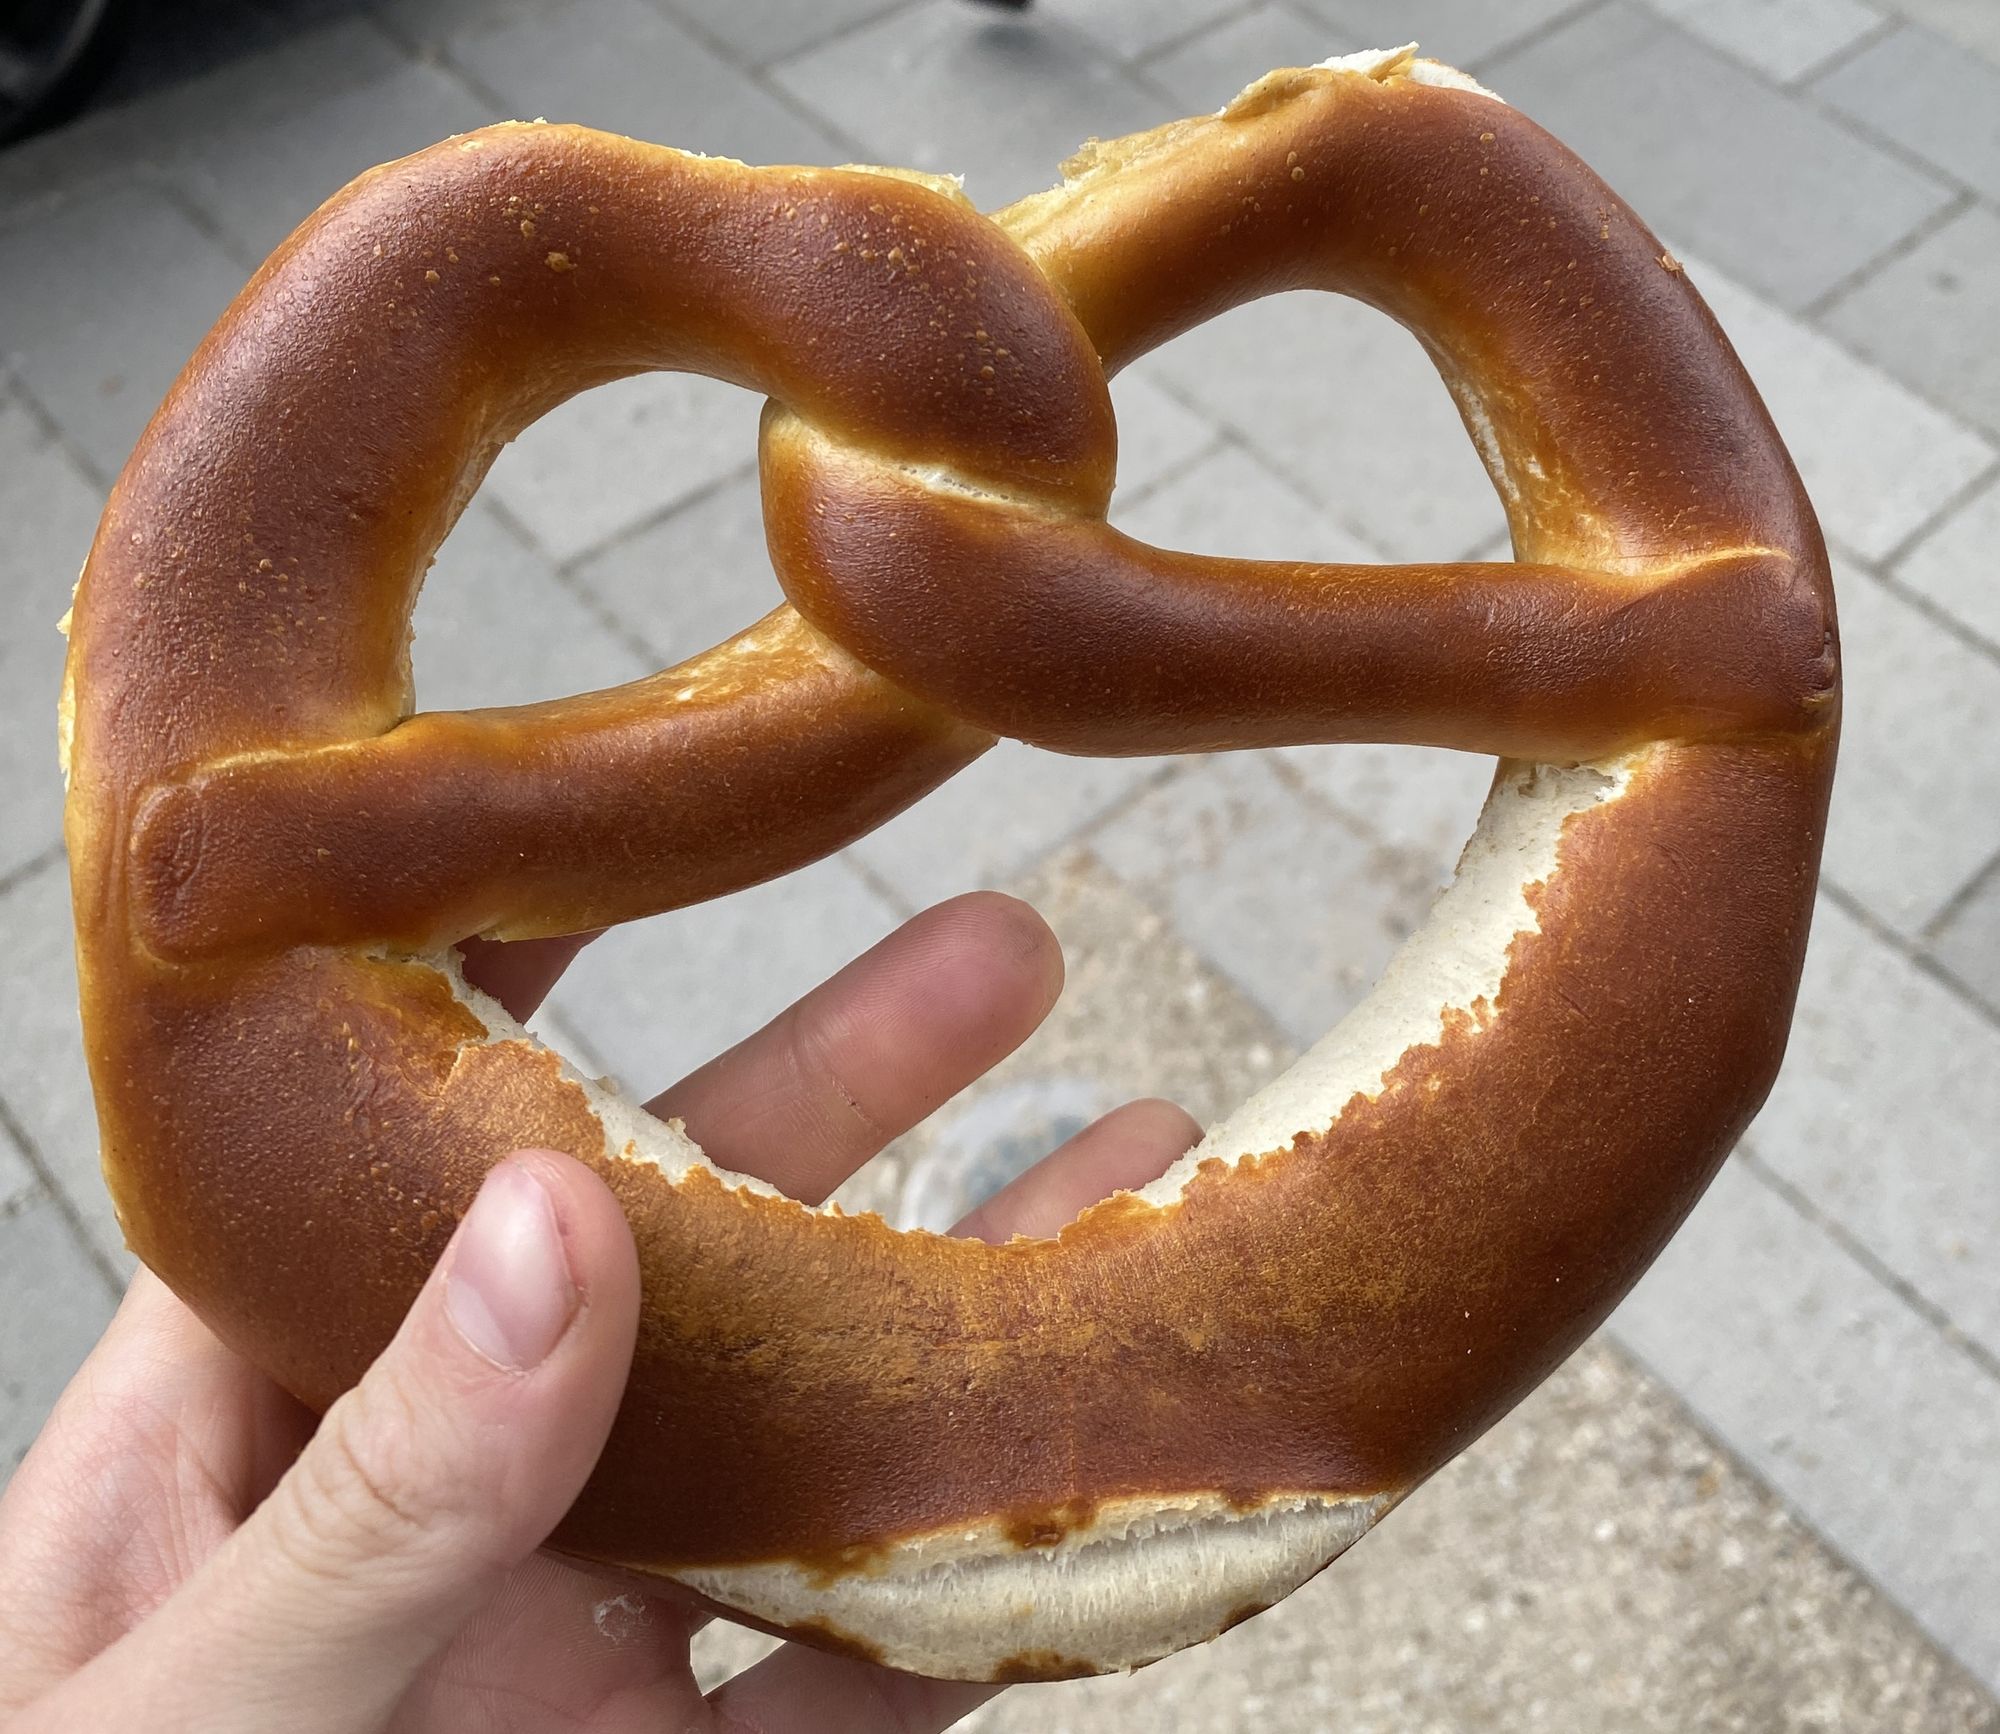 Someone holding a pretzel from Schäfer Dein Bäcker in the street